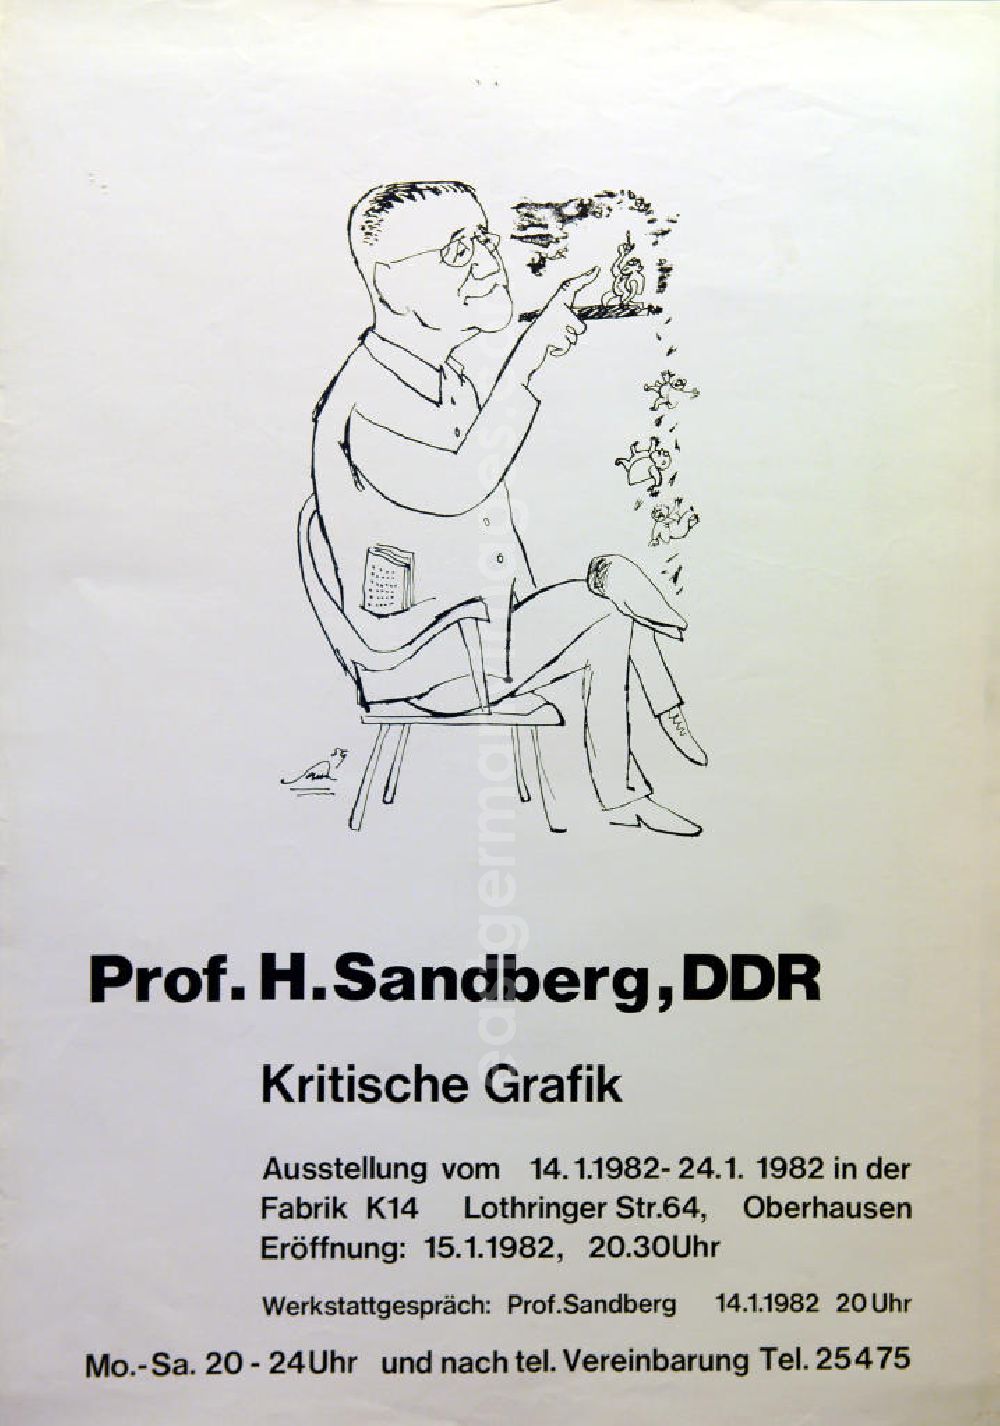 GDR image archive: Berlin - Plakat der Ausstellung Prof. H. Sandberg, DDR, kritische Grafik vom 14.01.-24.